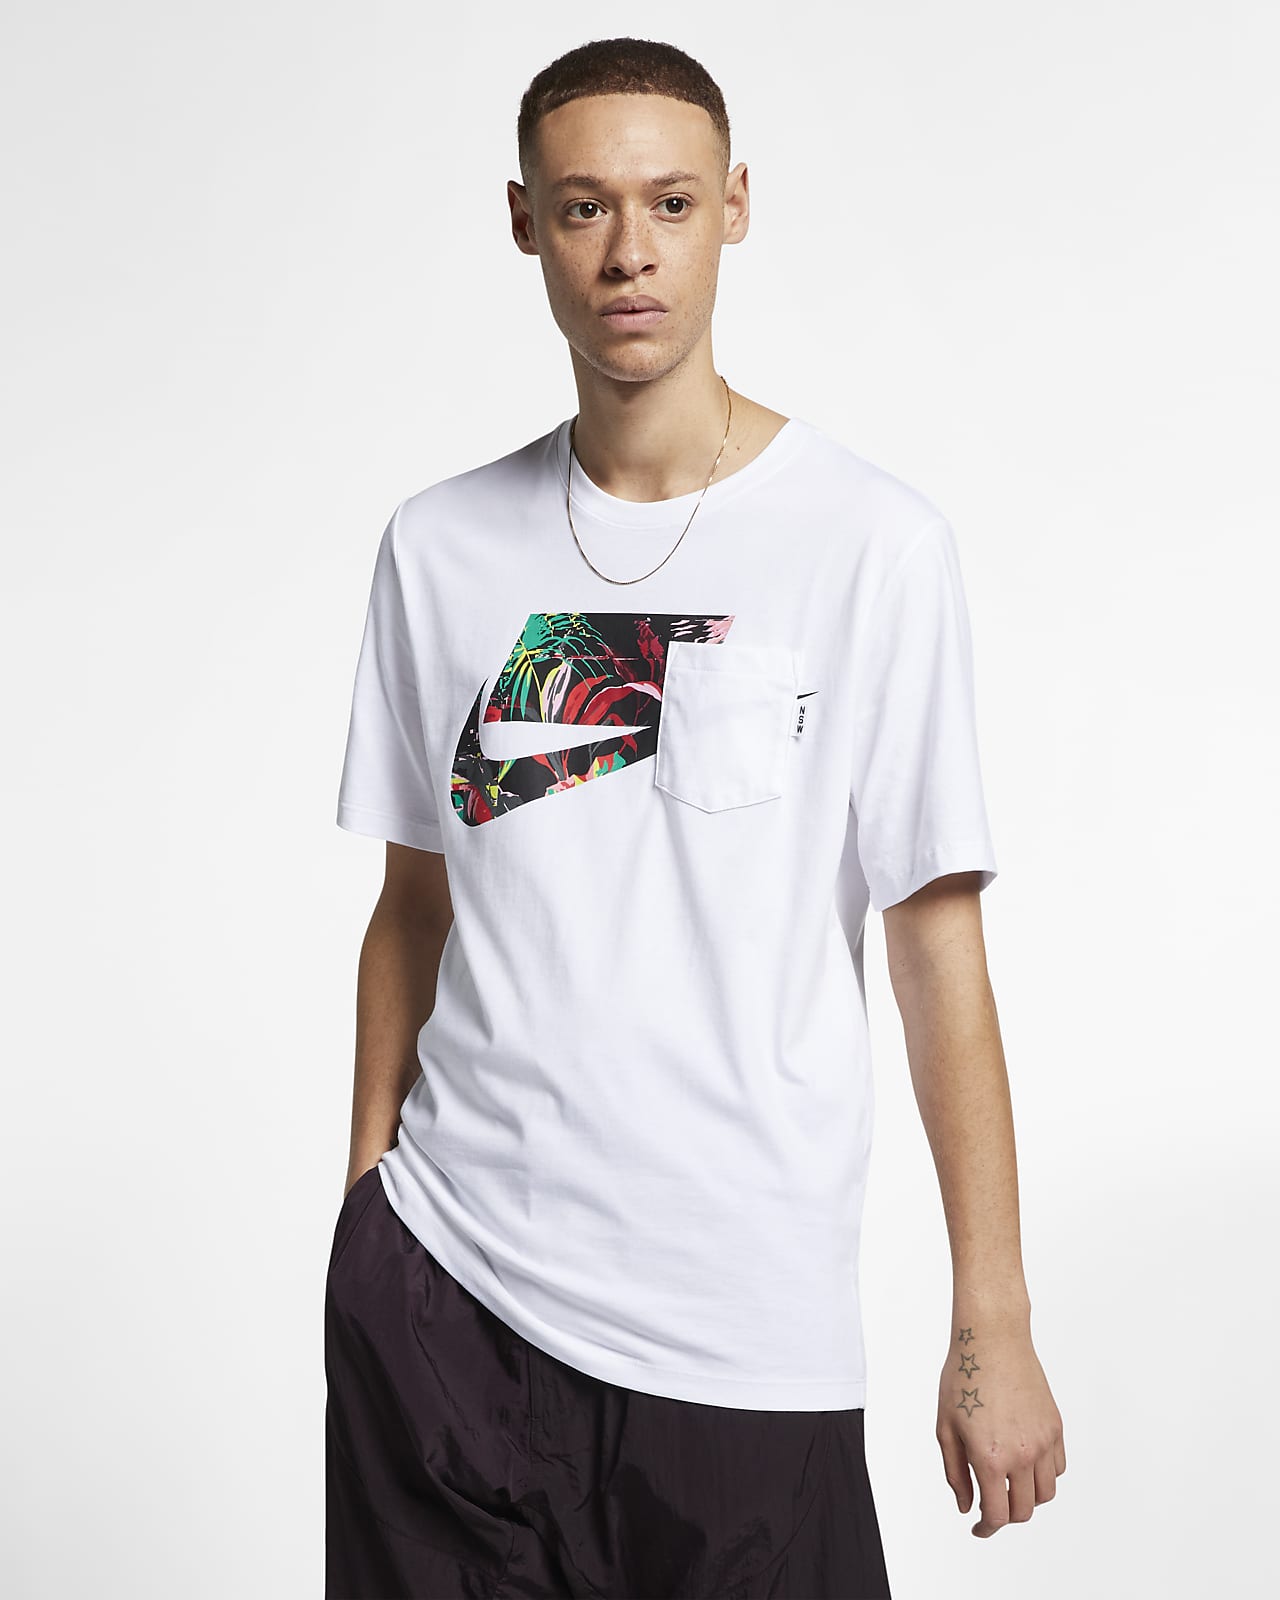 Nike Sportswear NSW 男子T恤